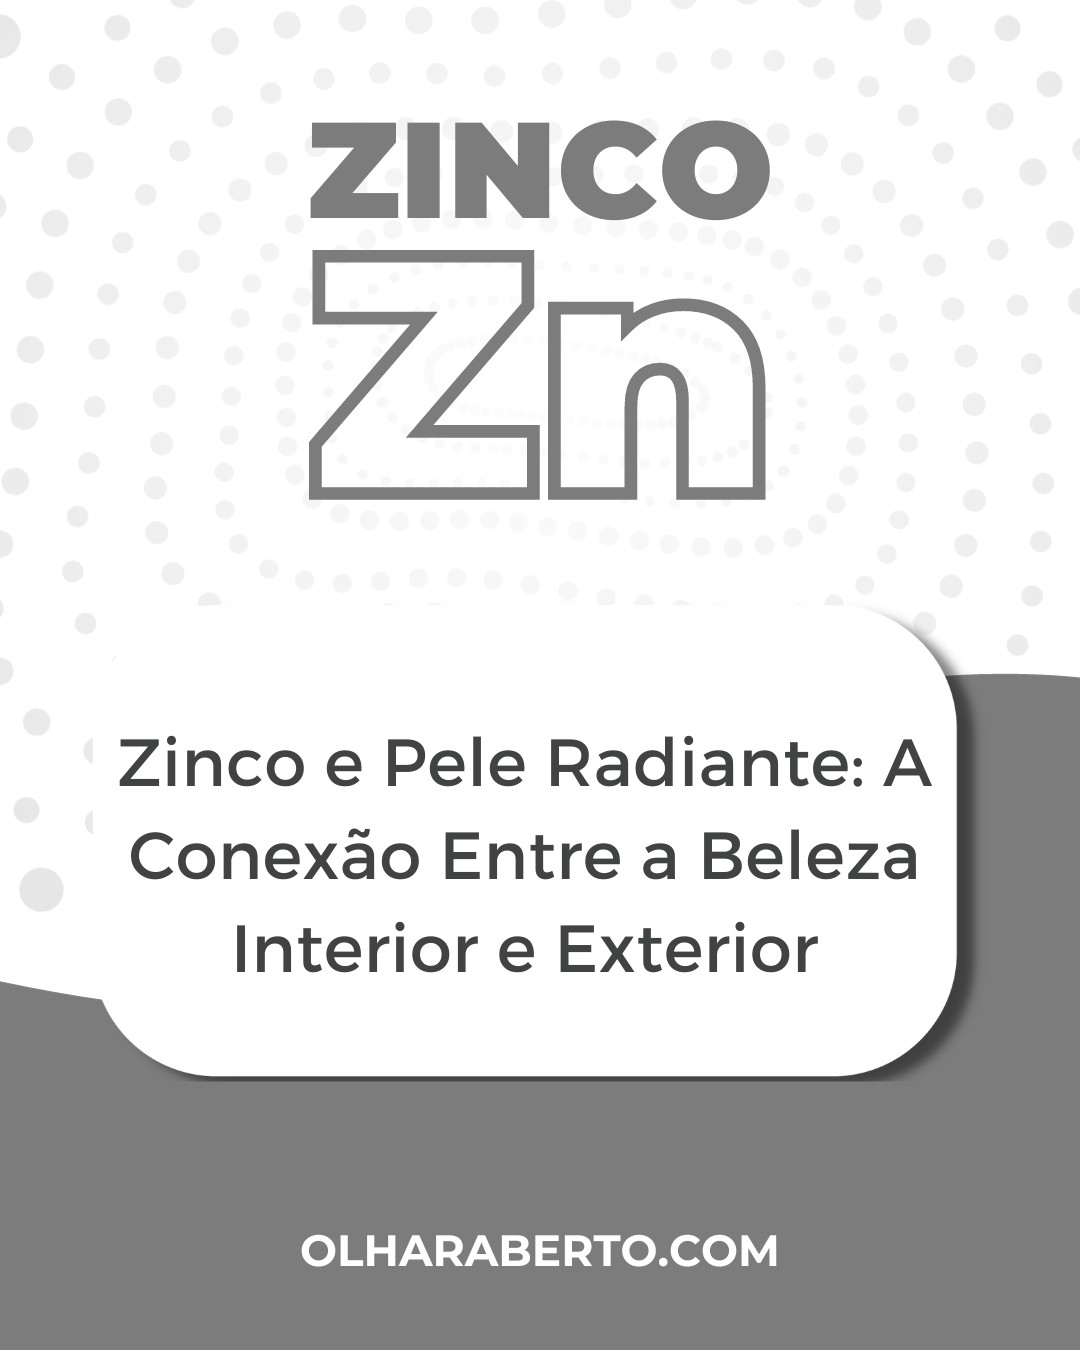 You are currently viewing Zinco e Pele Radiante: A Conexão Entre a Beleza Interior e Exterior